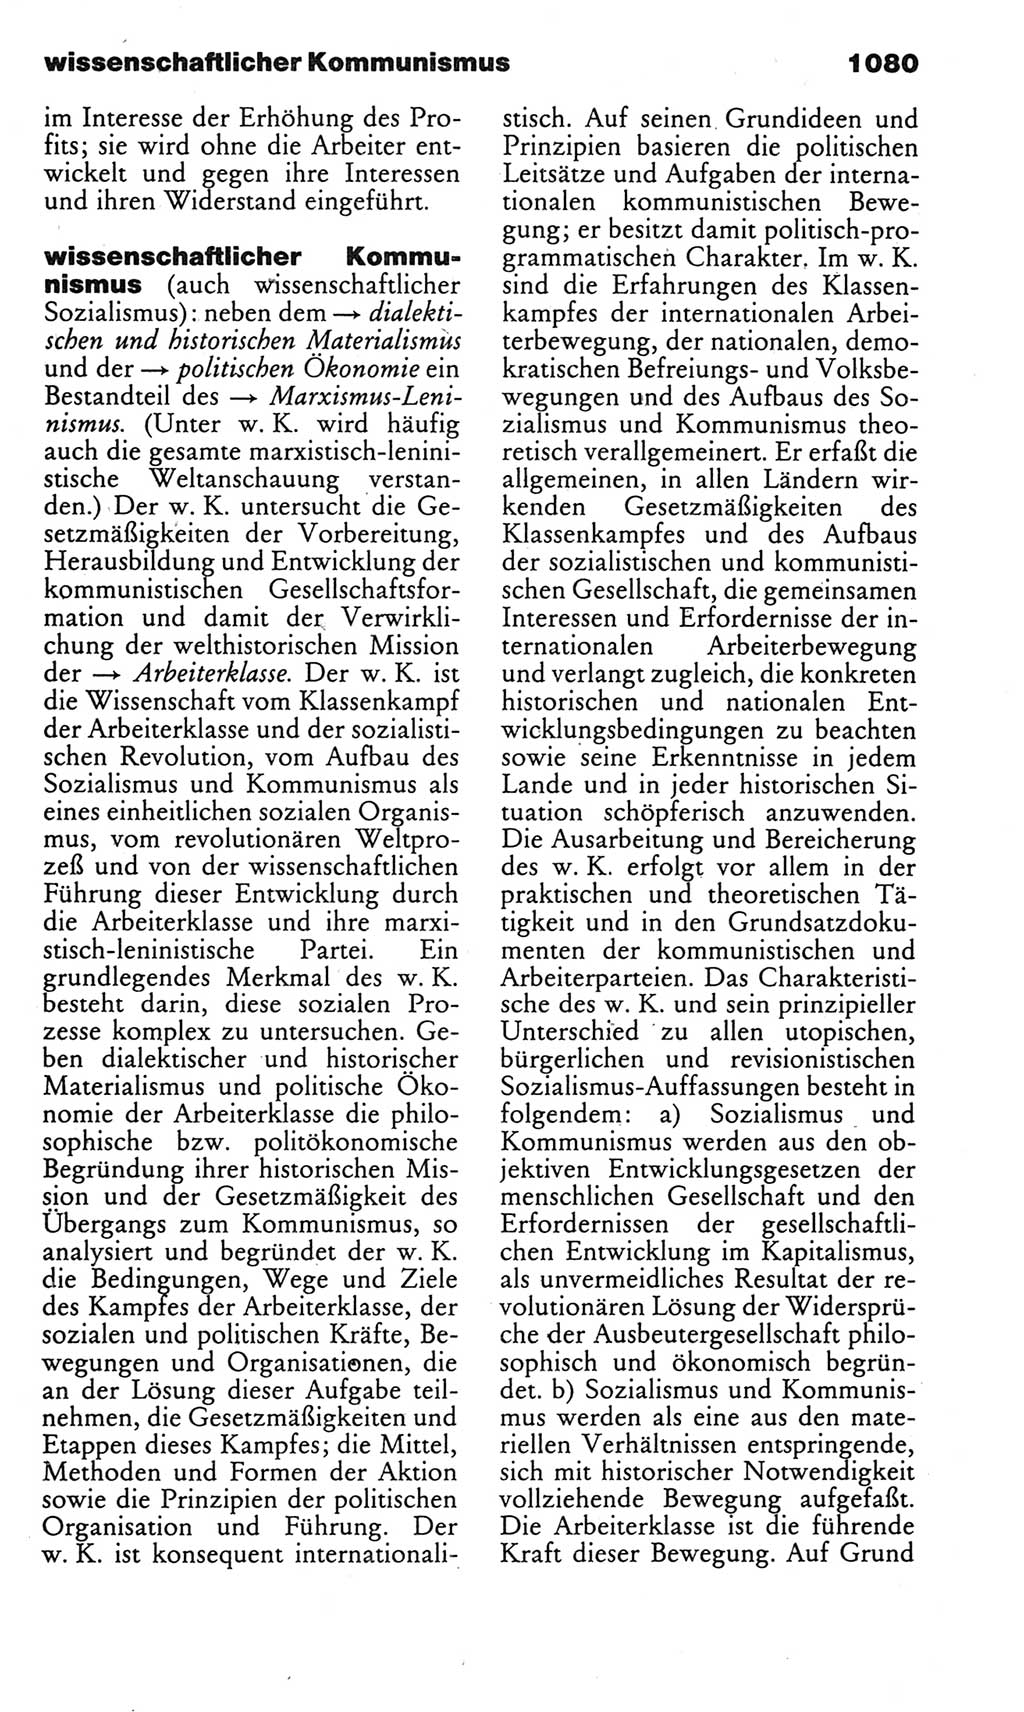 Kleines politisches Wörterbuch [Deutsche Demokratische Republik (DDR)] 1985, Seite 1080 (Kl. pol. Wb. DDR 1985, S. 1080)